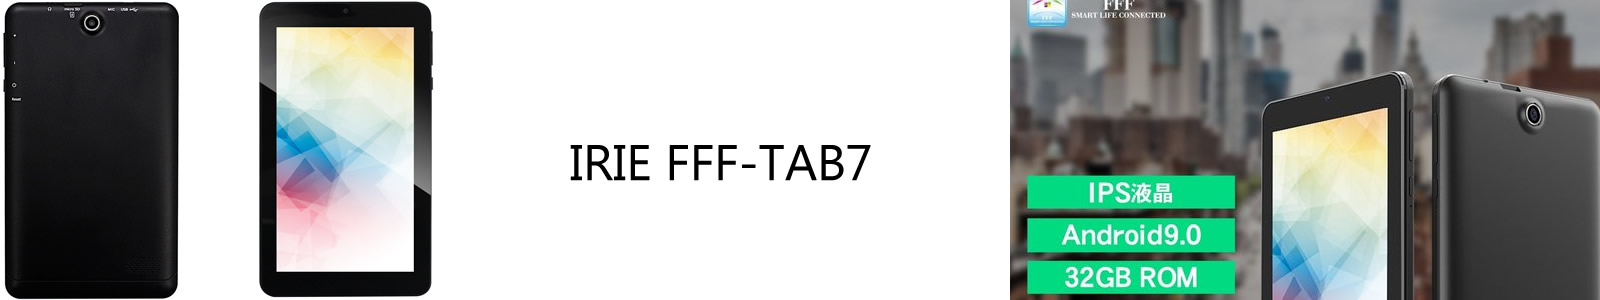 IRIE FFF-TAB7